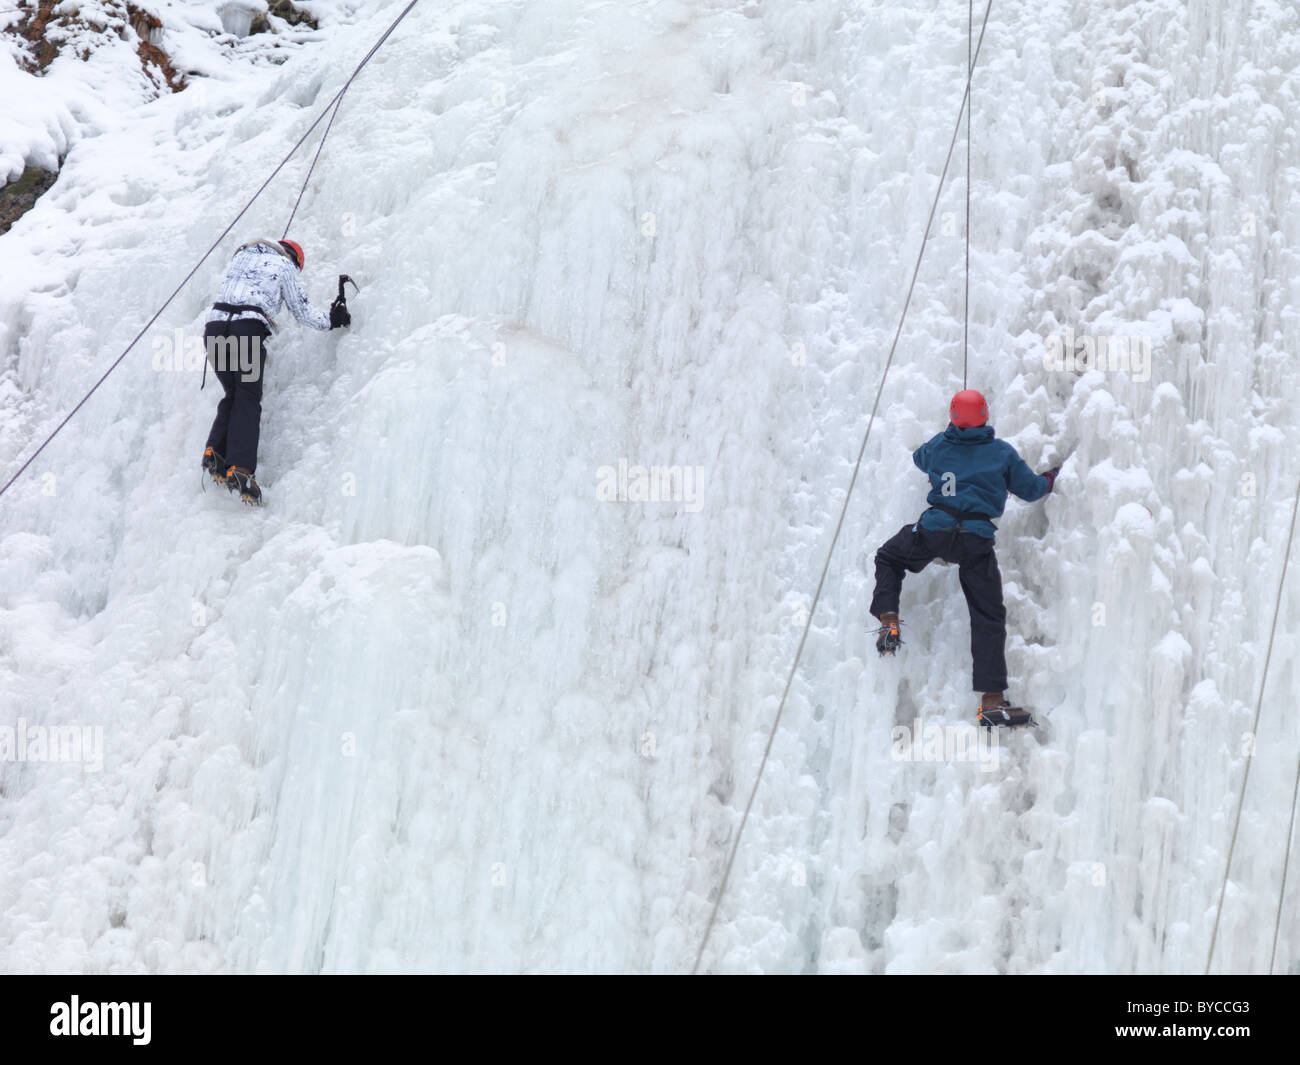 Los escaladores de hielo escalando una cascada congelada. Invierno escénica, Ontario, Canadá. Foto de stock